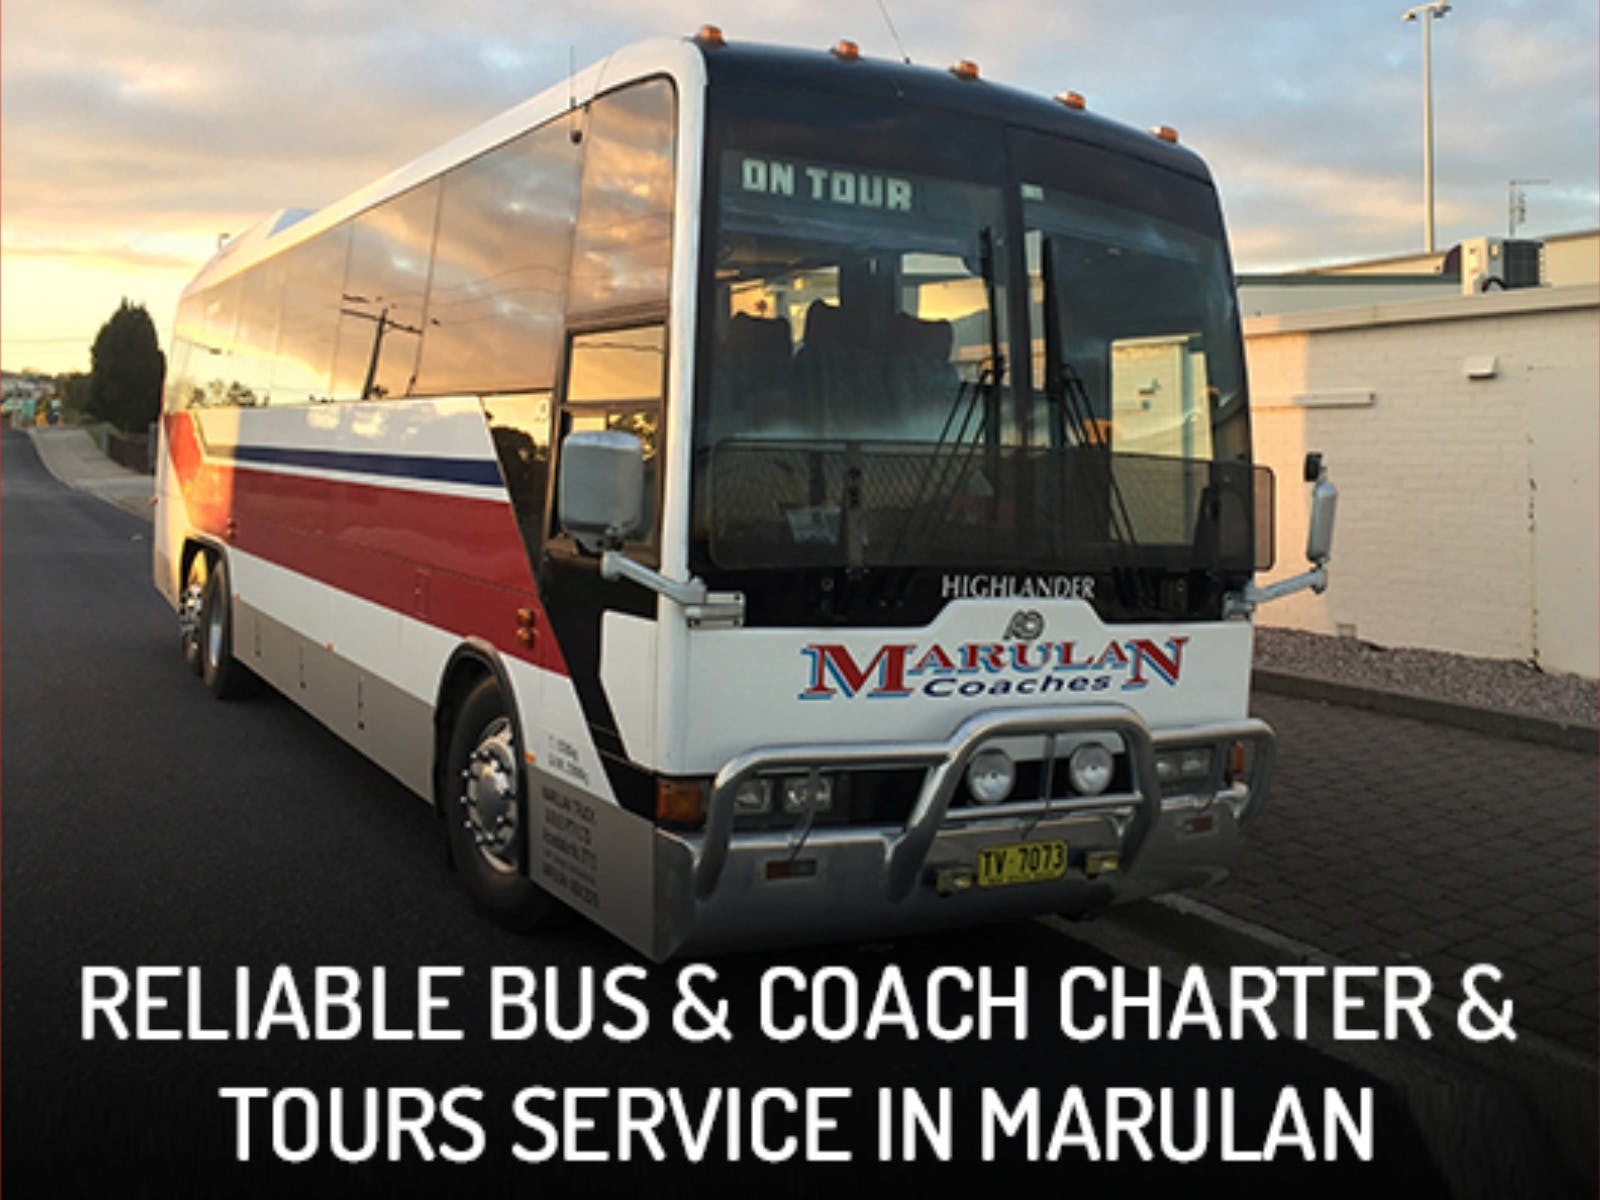 Marulan Coaches